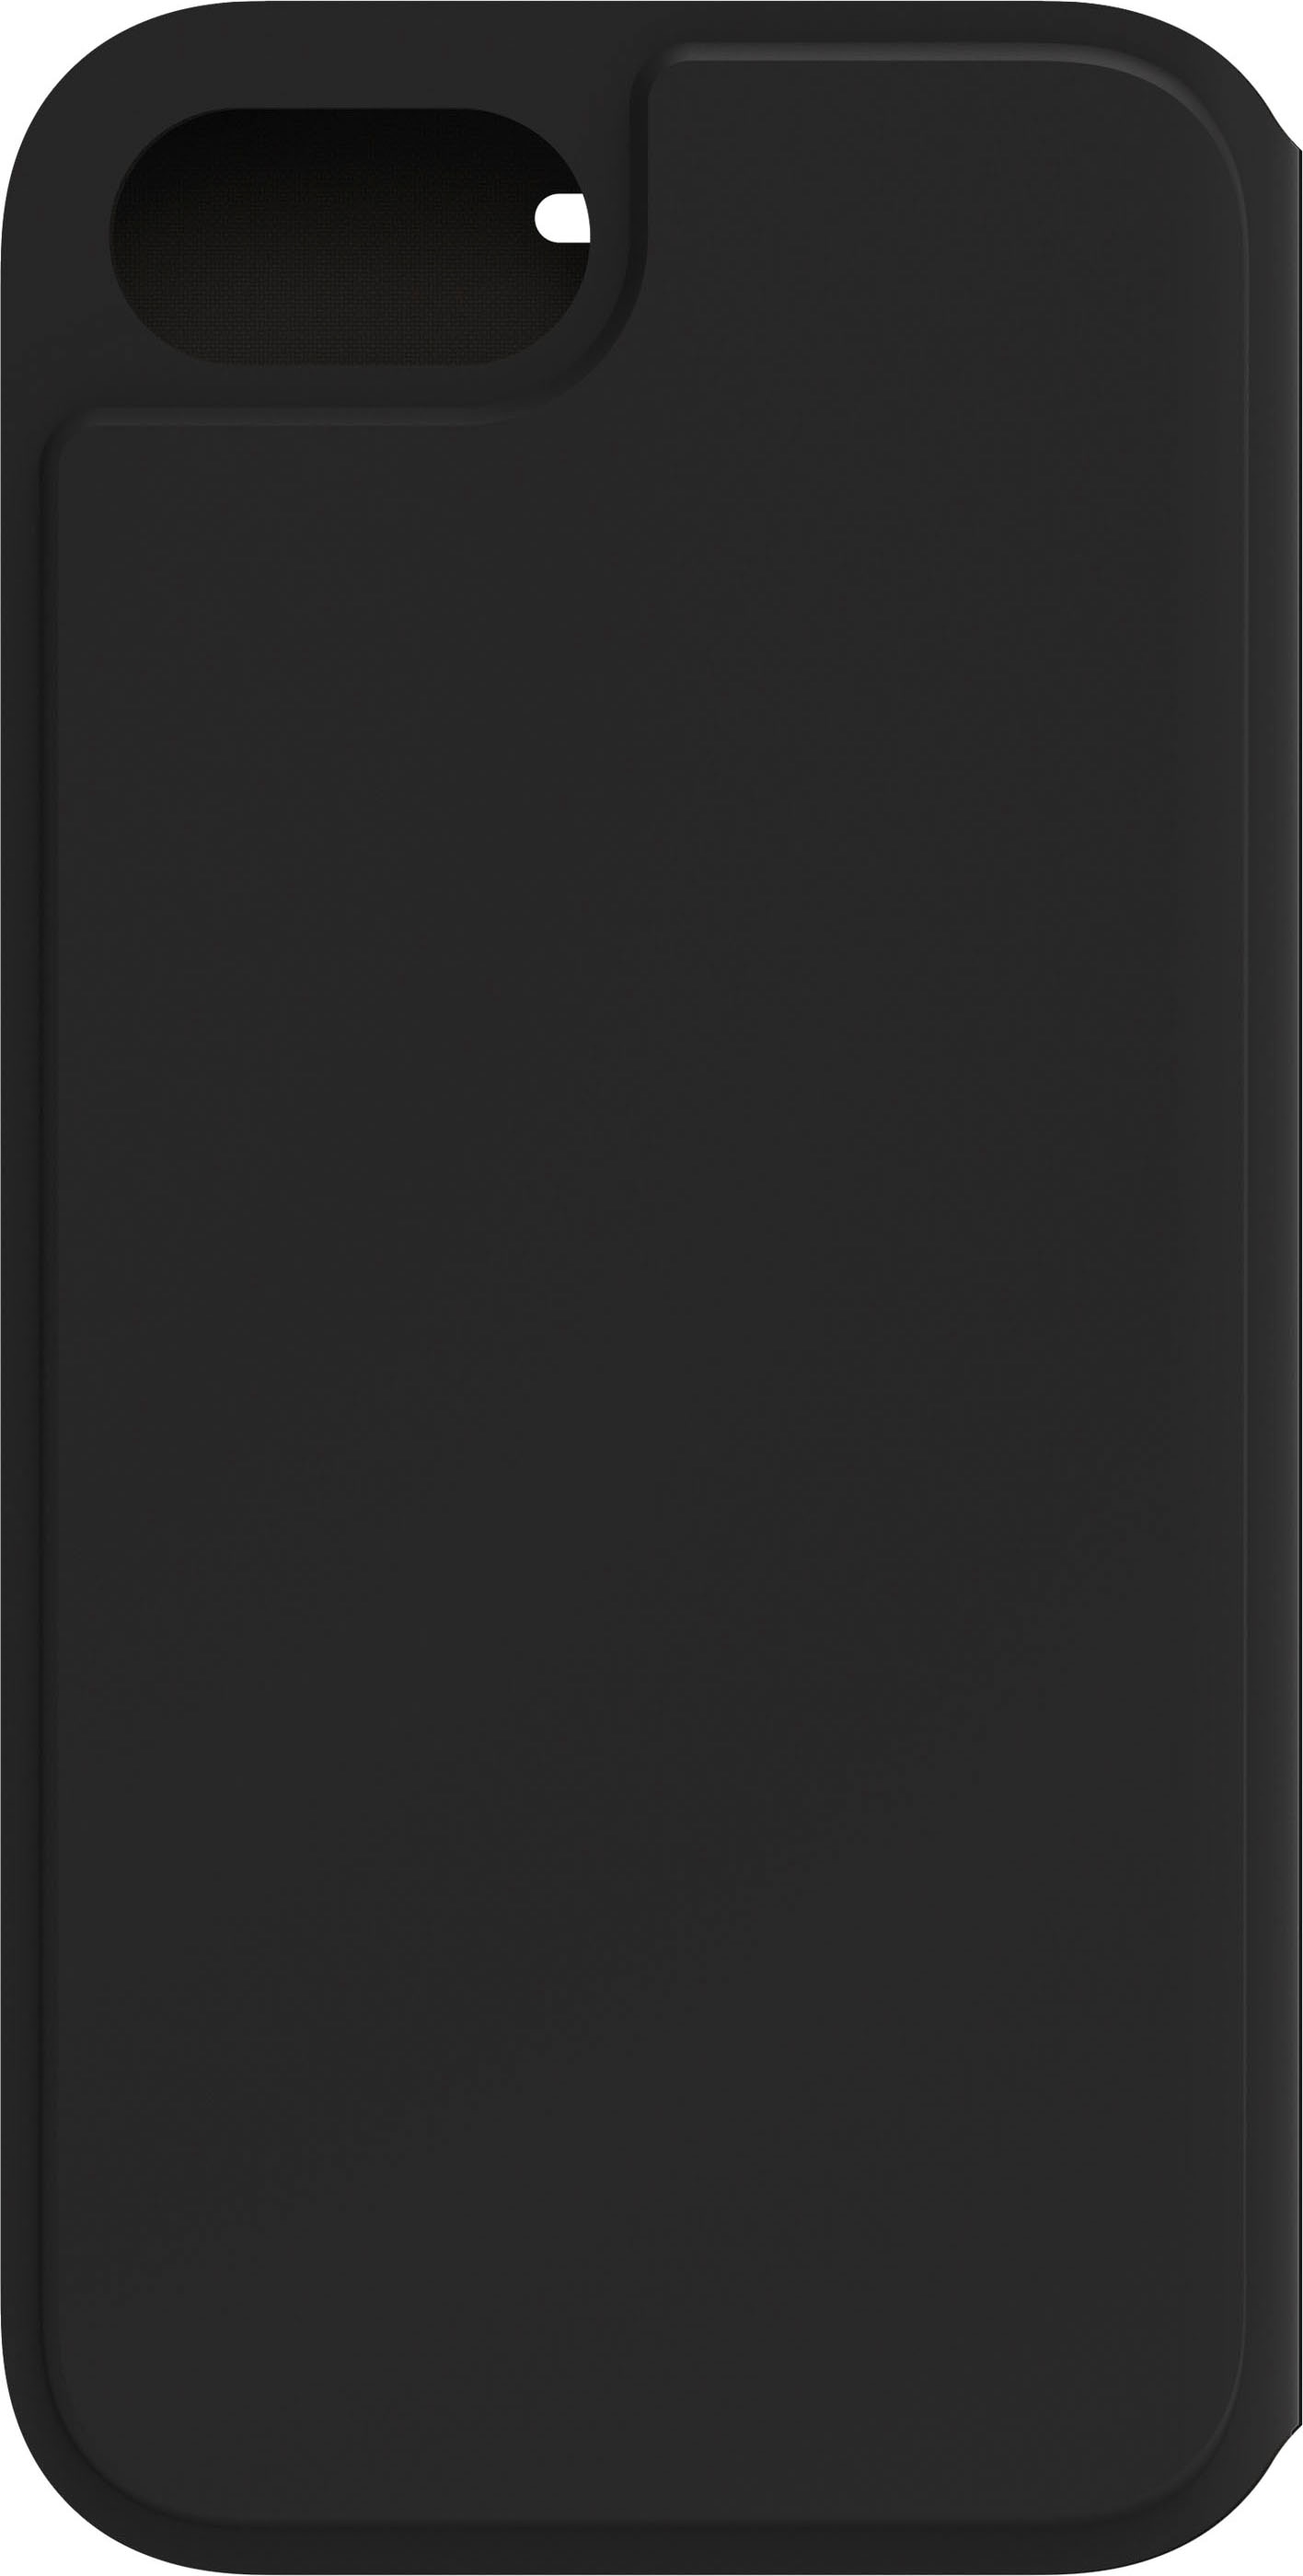 Otterbox Smartphone-Hülle »Strada Via Hülle fürApple iPhone SE (3rd/2nd gen)/8/7«, iPhone 7 / 8-iPhone SE (2020), stoßfest, sturzsicher, dünn, schützende Folio-Hülle mit Kartenhalter